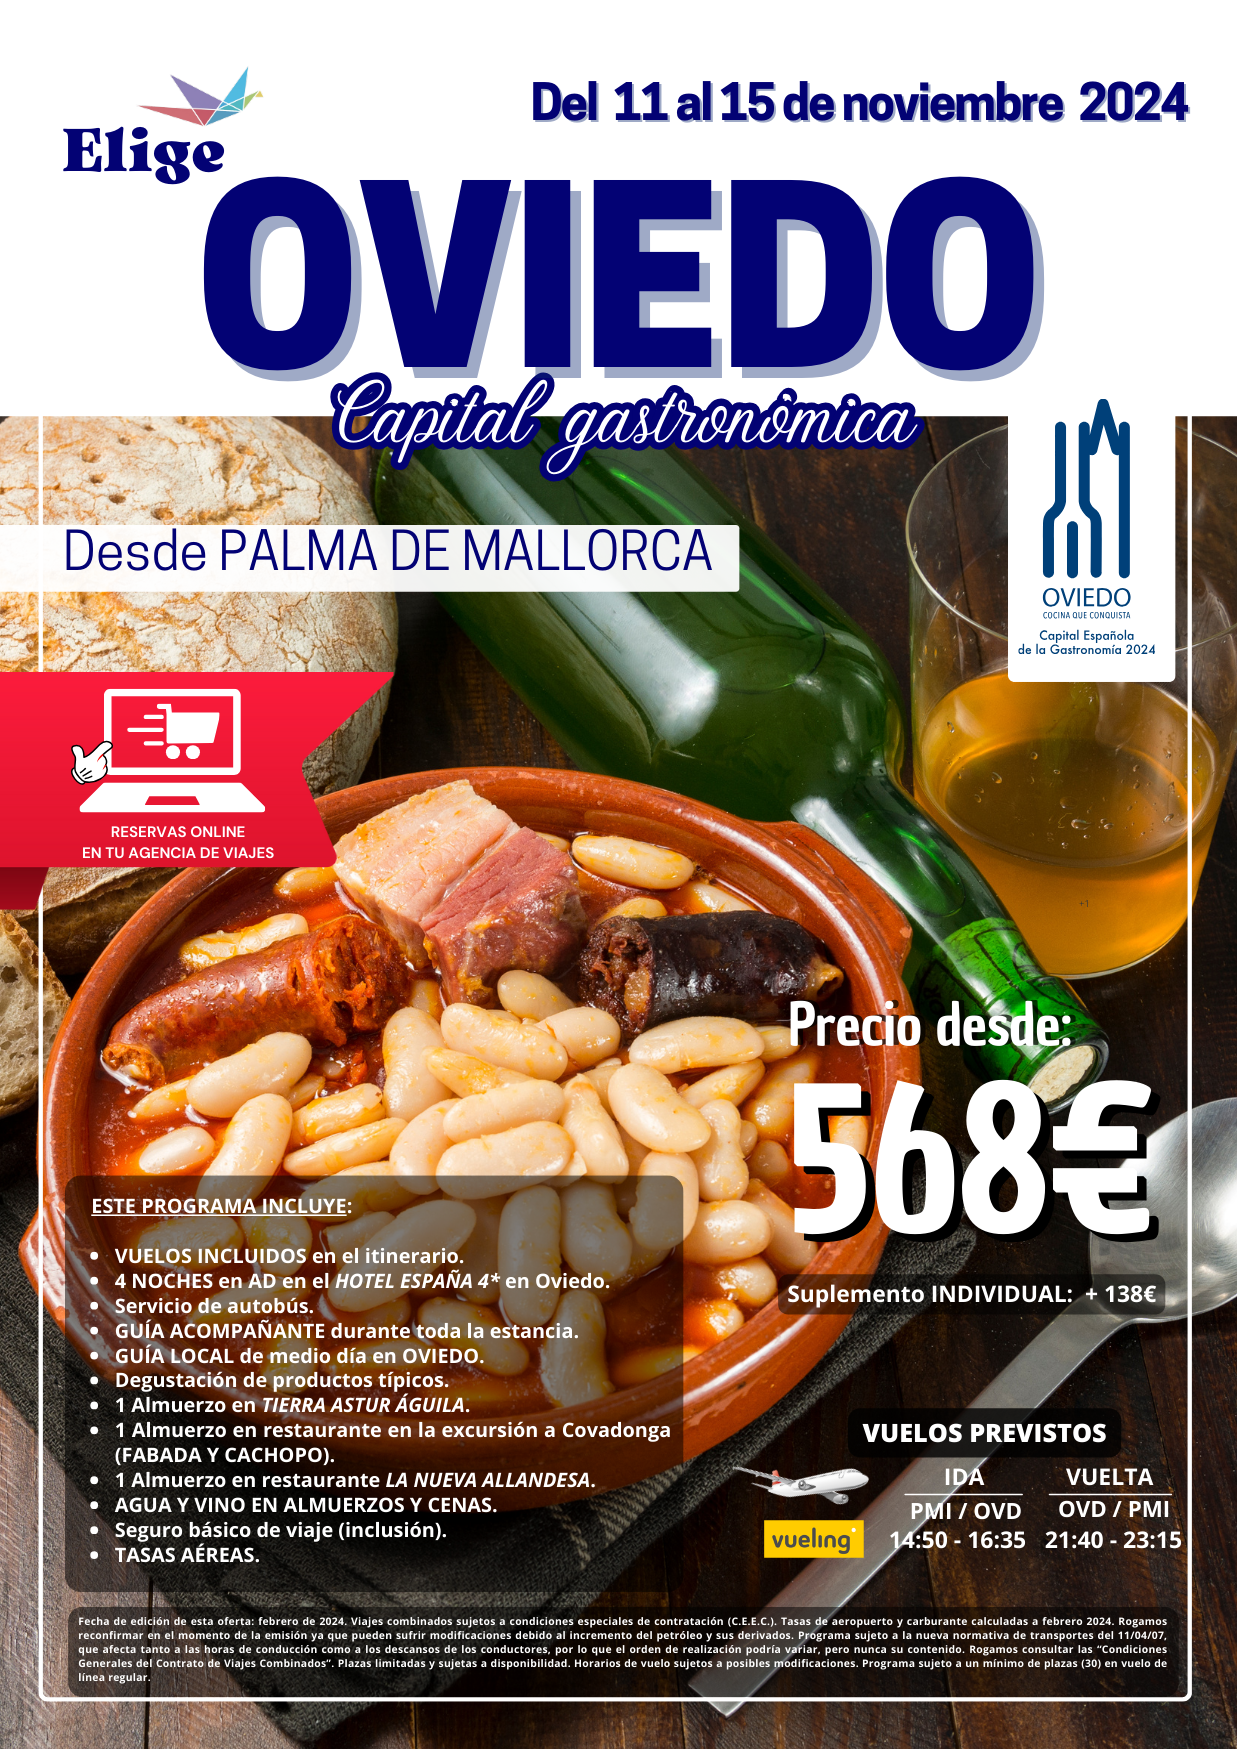 Circuito Oviedo Gastronómico, noviembre 2024, con hotel 4 estrellas, excursiones, traslados, guía acompañante, agua y vino en almuerzos y cenas, para Agencias de Viajes con Elige Tu Viaje.